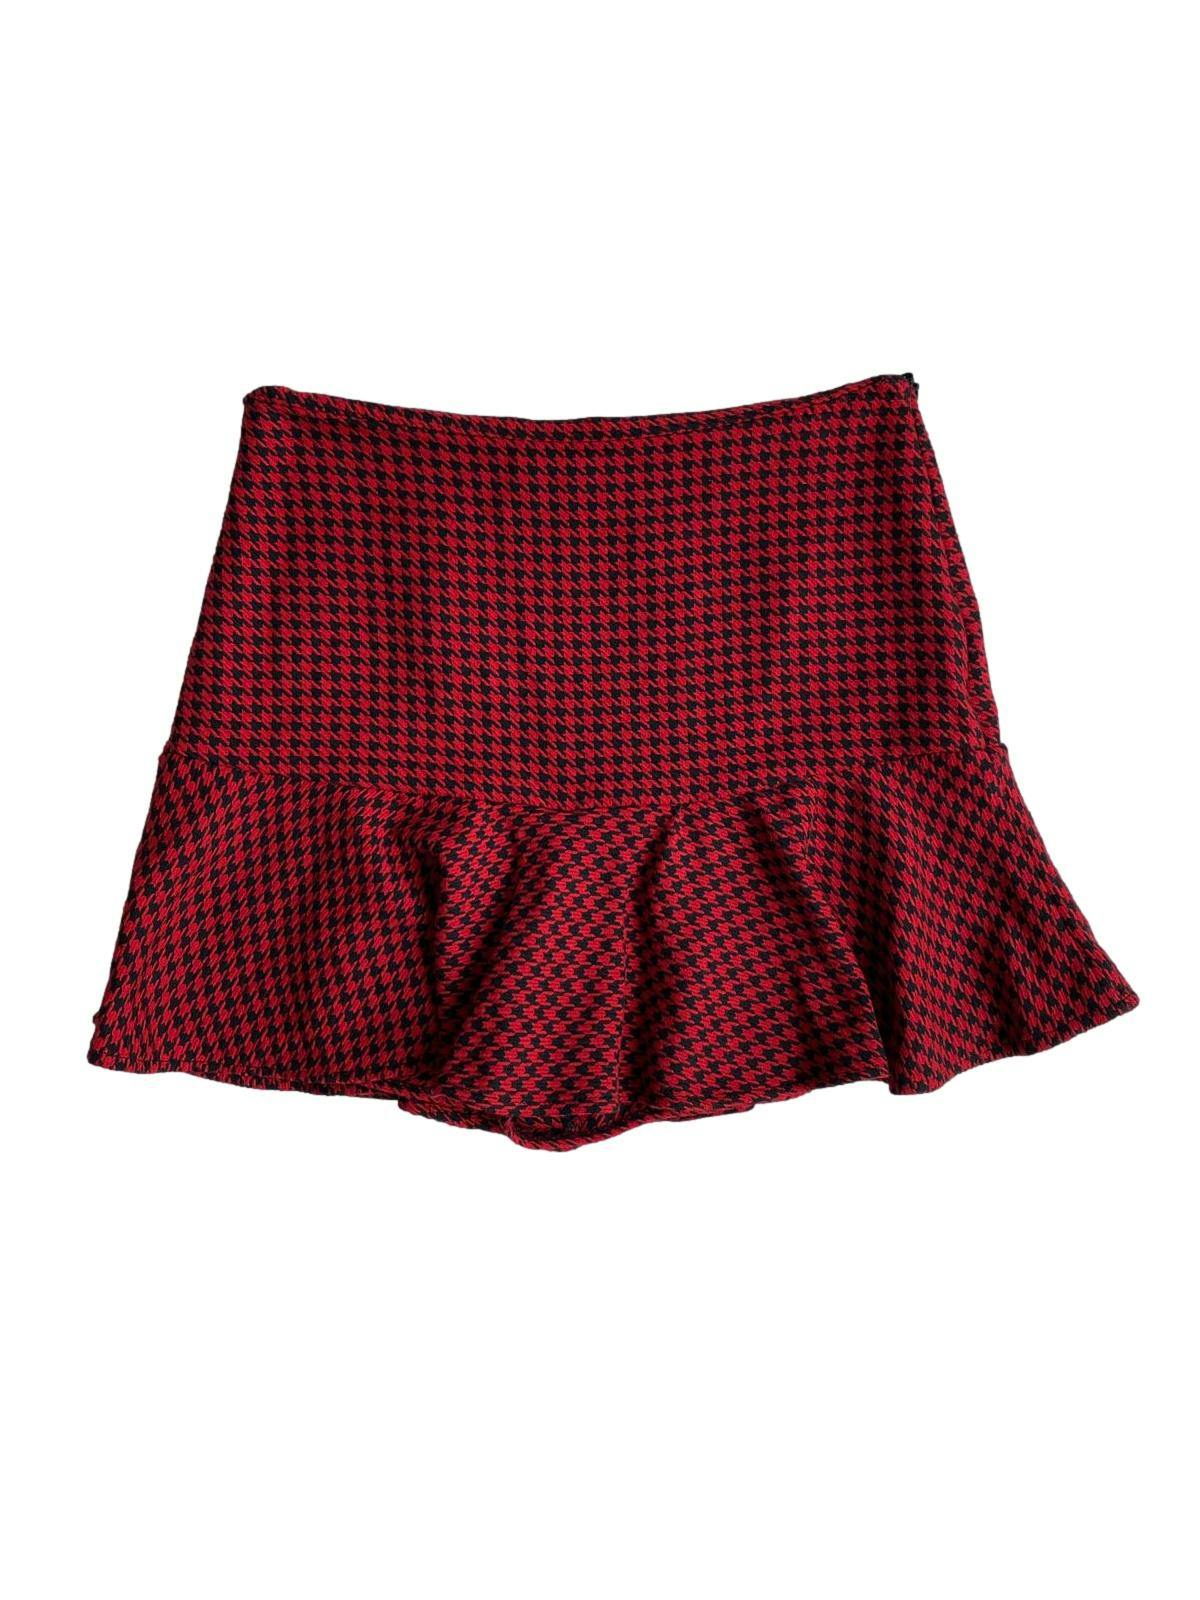 Falda short Pull & Bear con estampado pata de gallo en tonos rojos y negros. Cierre lateral y volante en basta. Cintura: 72cm, largo: 39cm. 